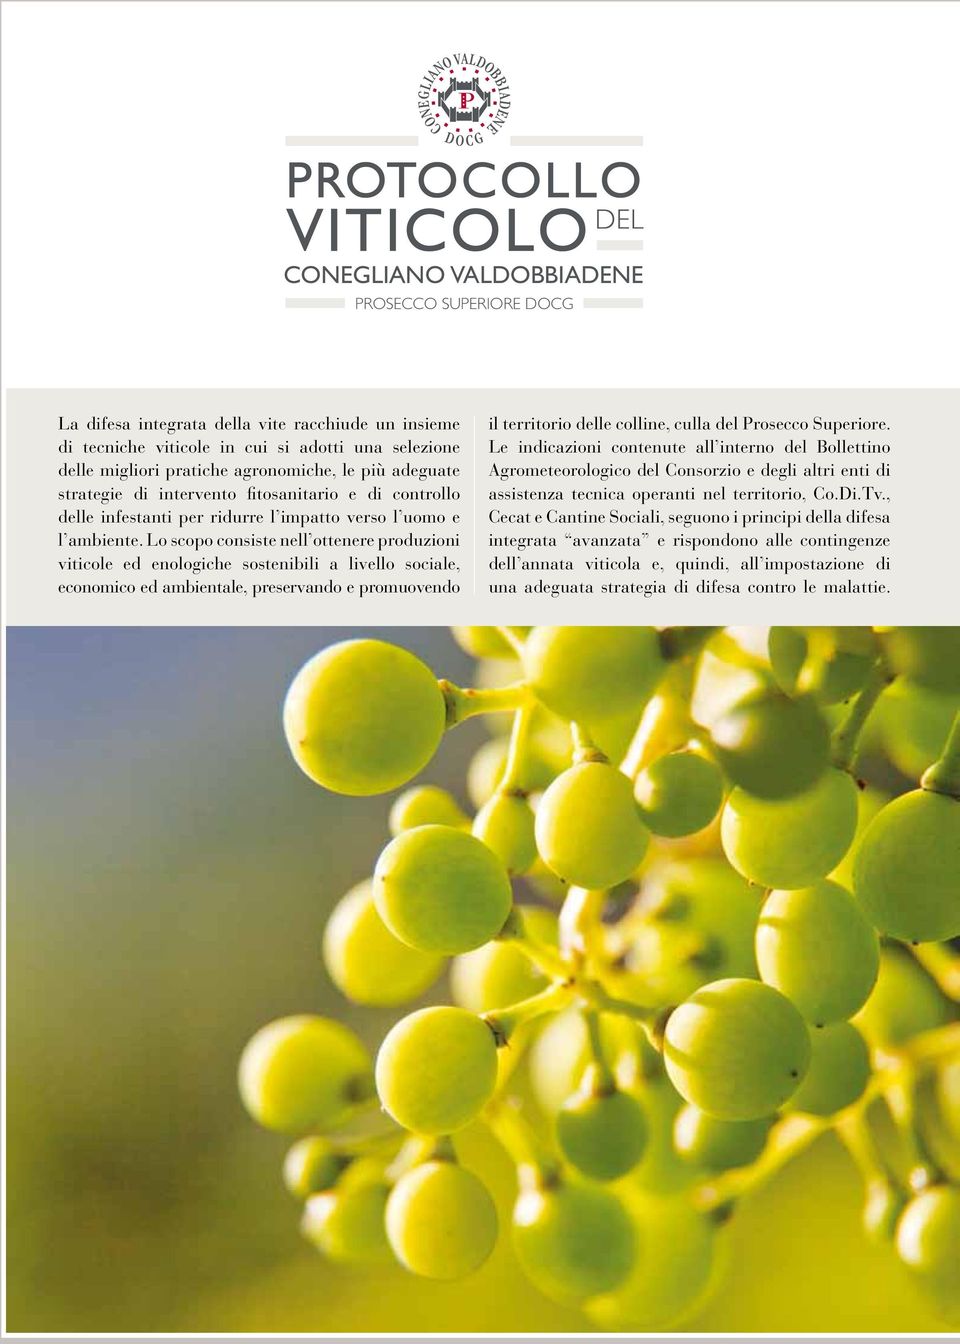 Lo scopo consiste nell ottenere produzioni viticole ed enologiche sostenibili a livello sociale, economico ed ambientale, preservando e promuovendo il territorio delle colline, culla del Prosecco